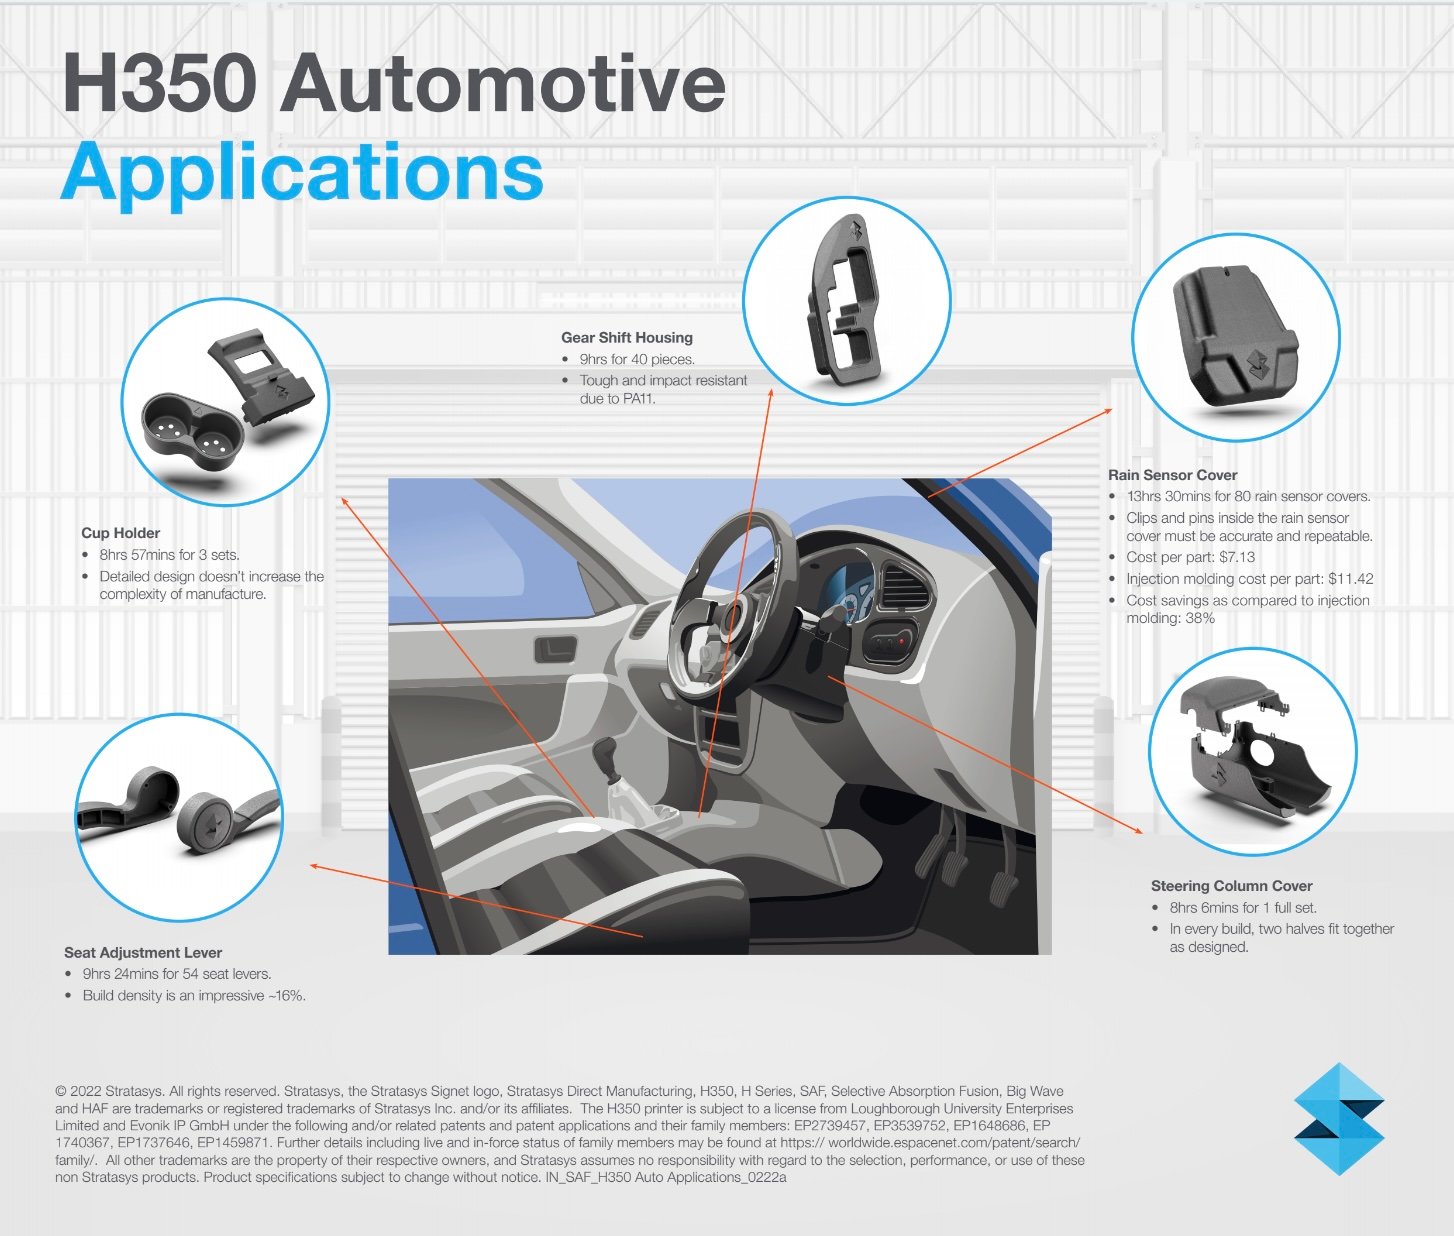 H350 Automotive Applications